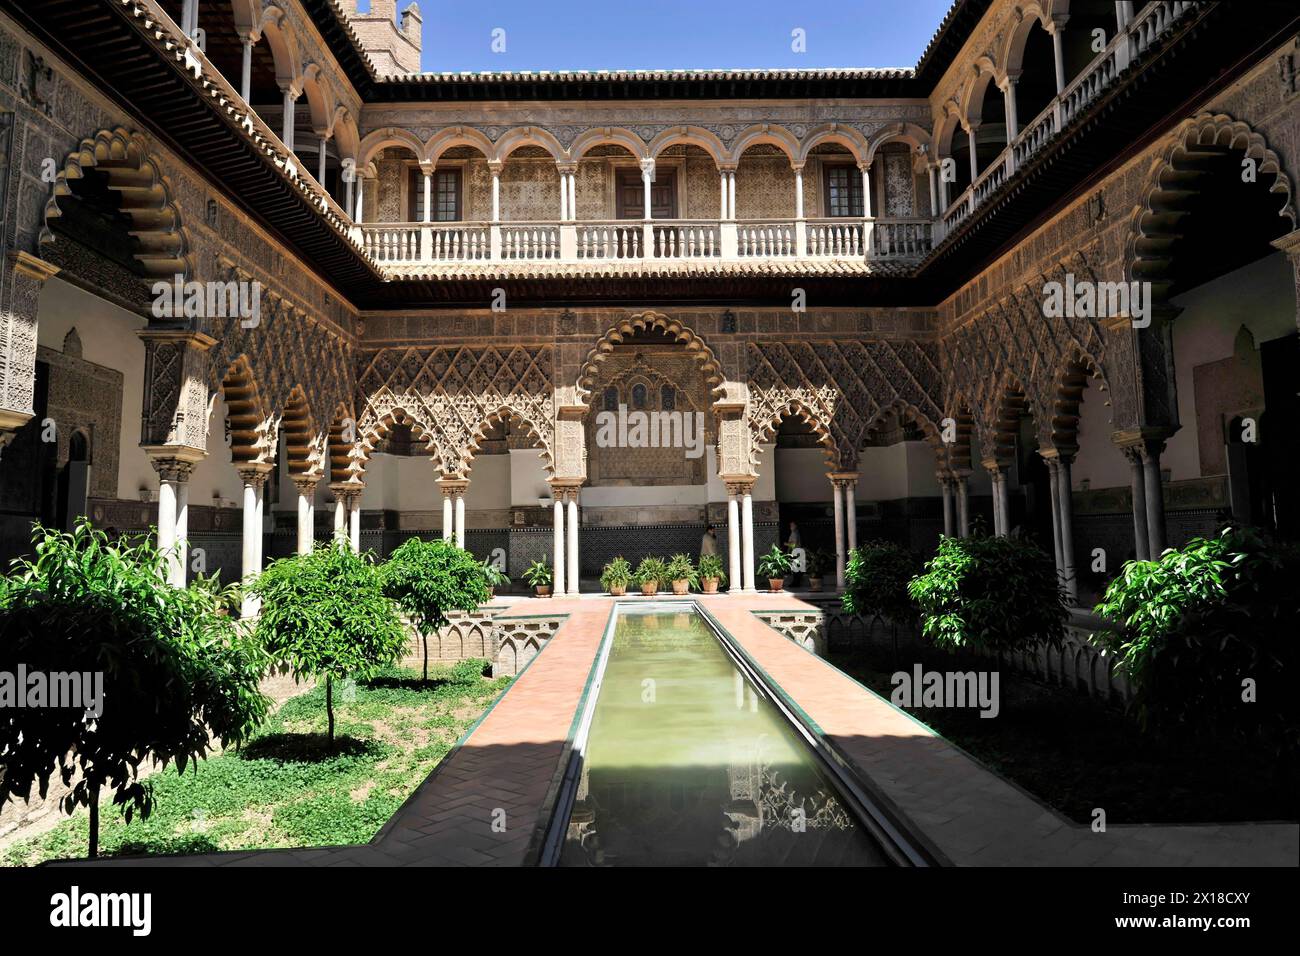 Séville, Palais Royal Real Alcazar, site du patrimoine mondial de l'UNESCO, à Séville, des arcades entourent une cour intérieure calme avec un long canal d'eau Banque D'Images